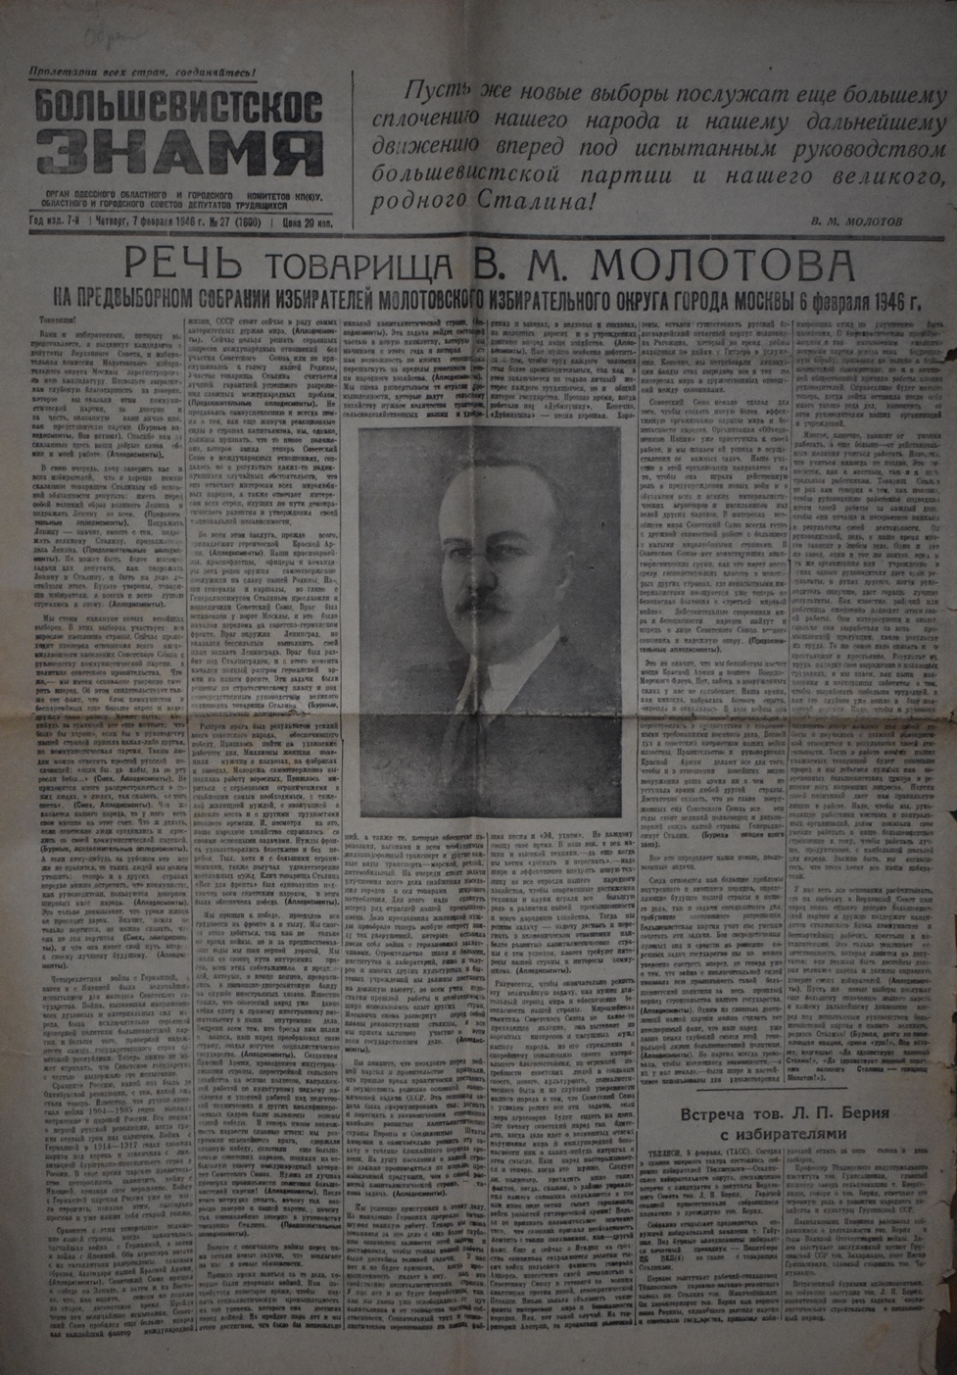 Газета "Большевистское знамя" № 27 (1600), четвер 7лютого 1946 року